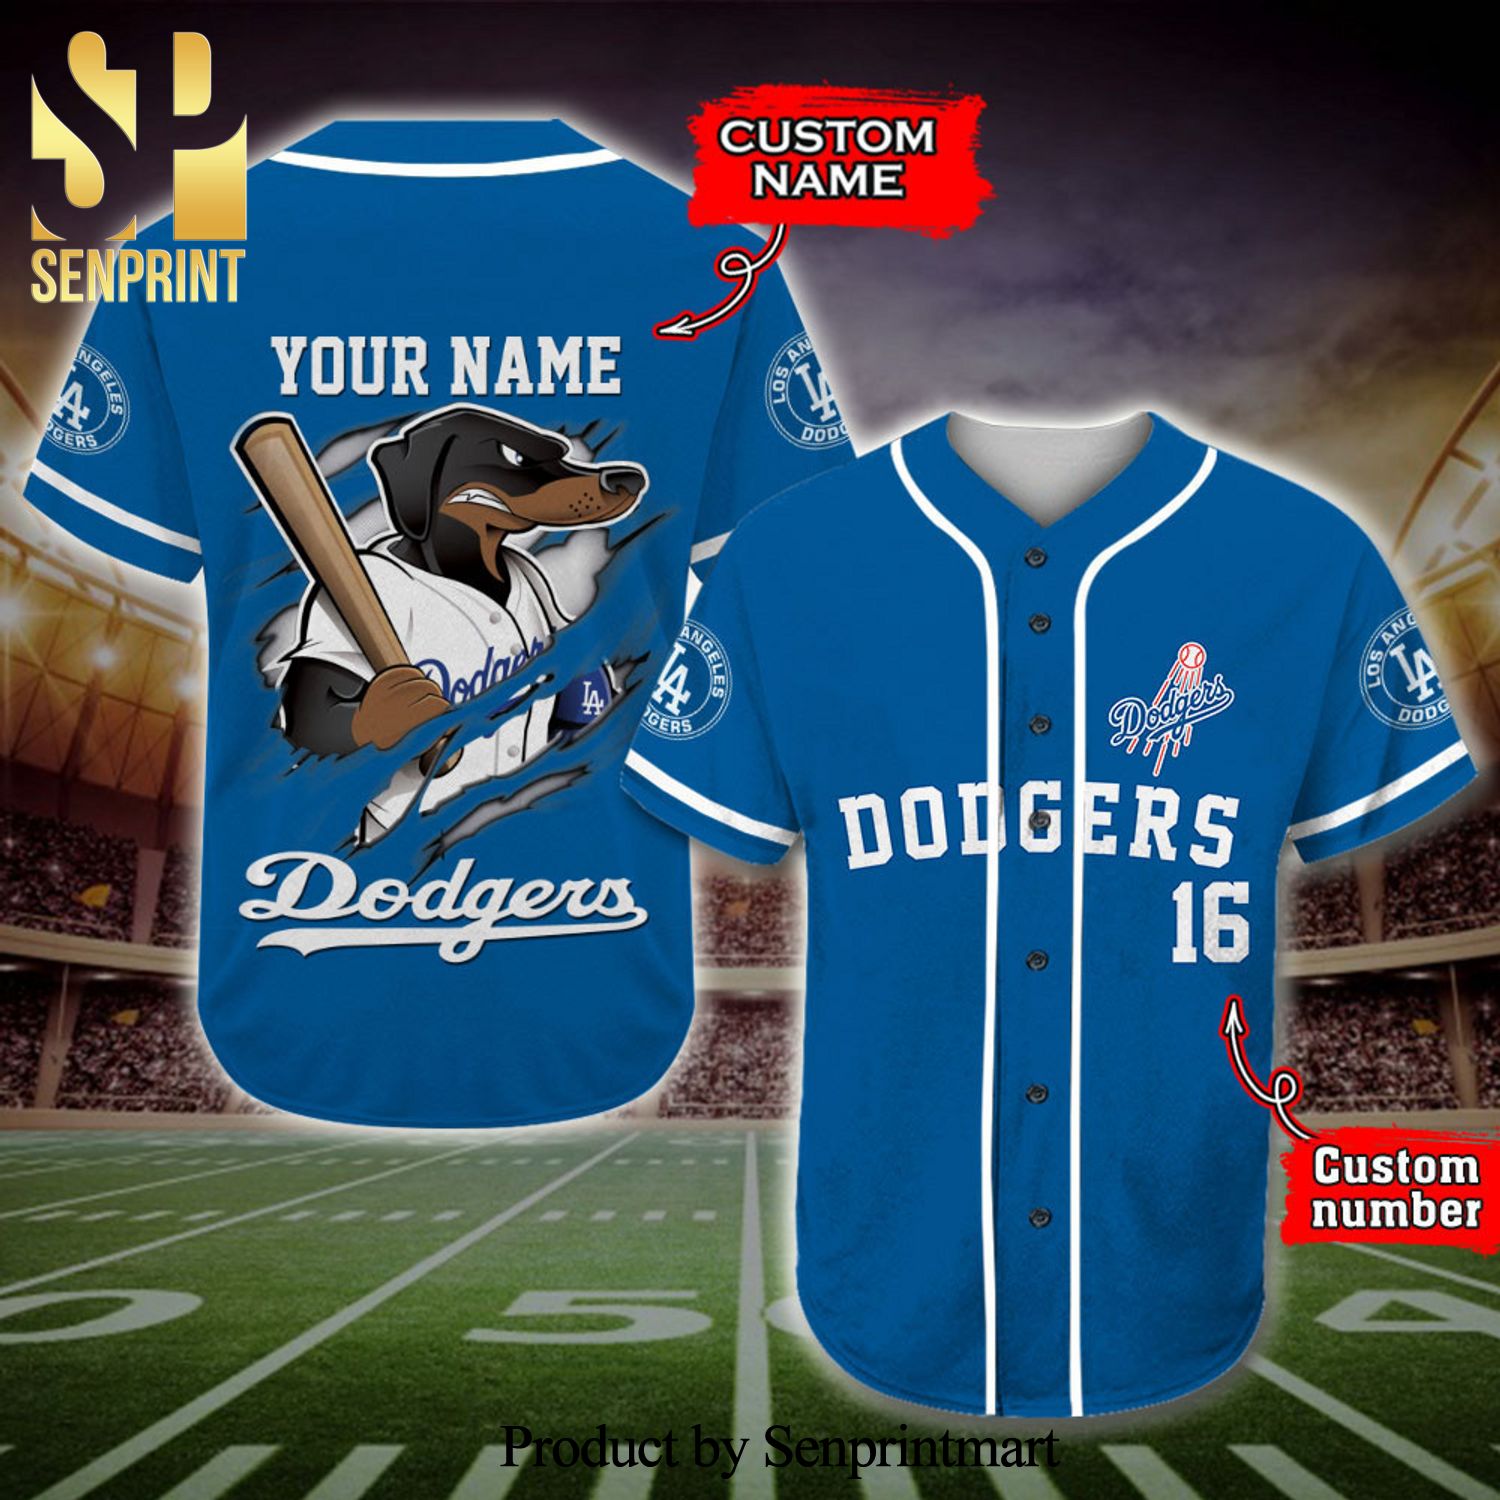 Official MLB Personalised Jerseys, Custom Baseball Apparel, Customised MLB  Gear